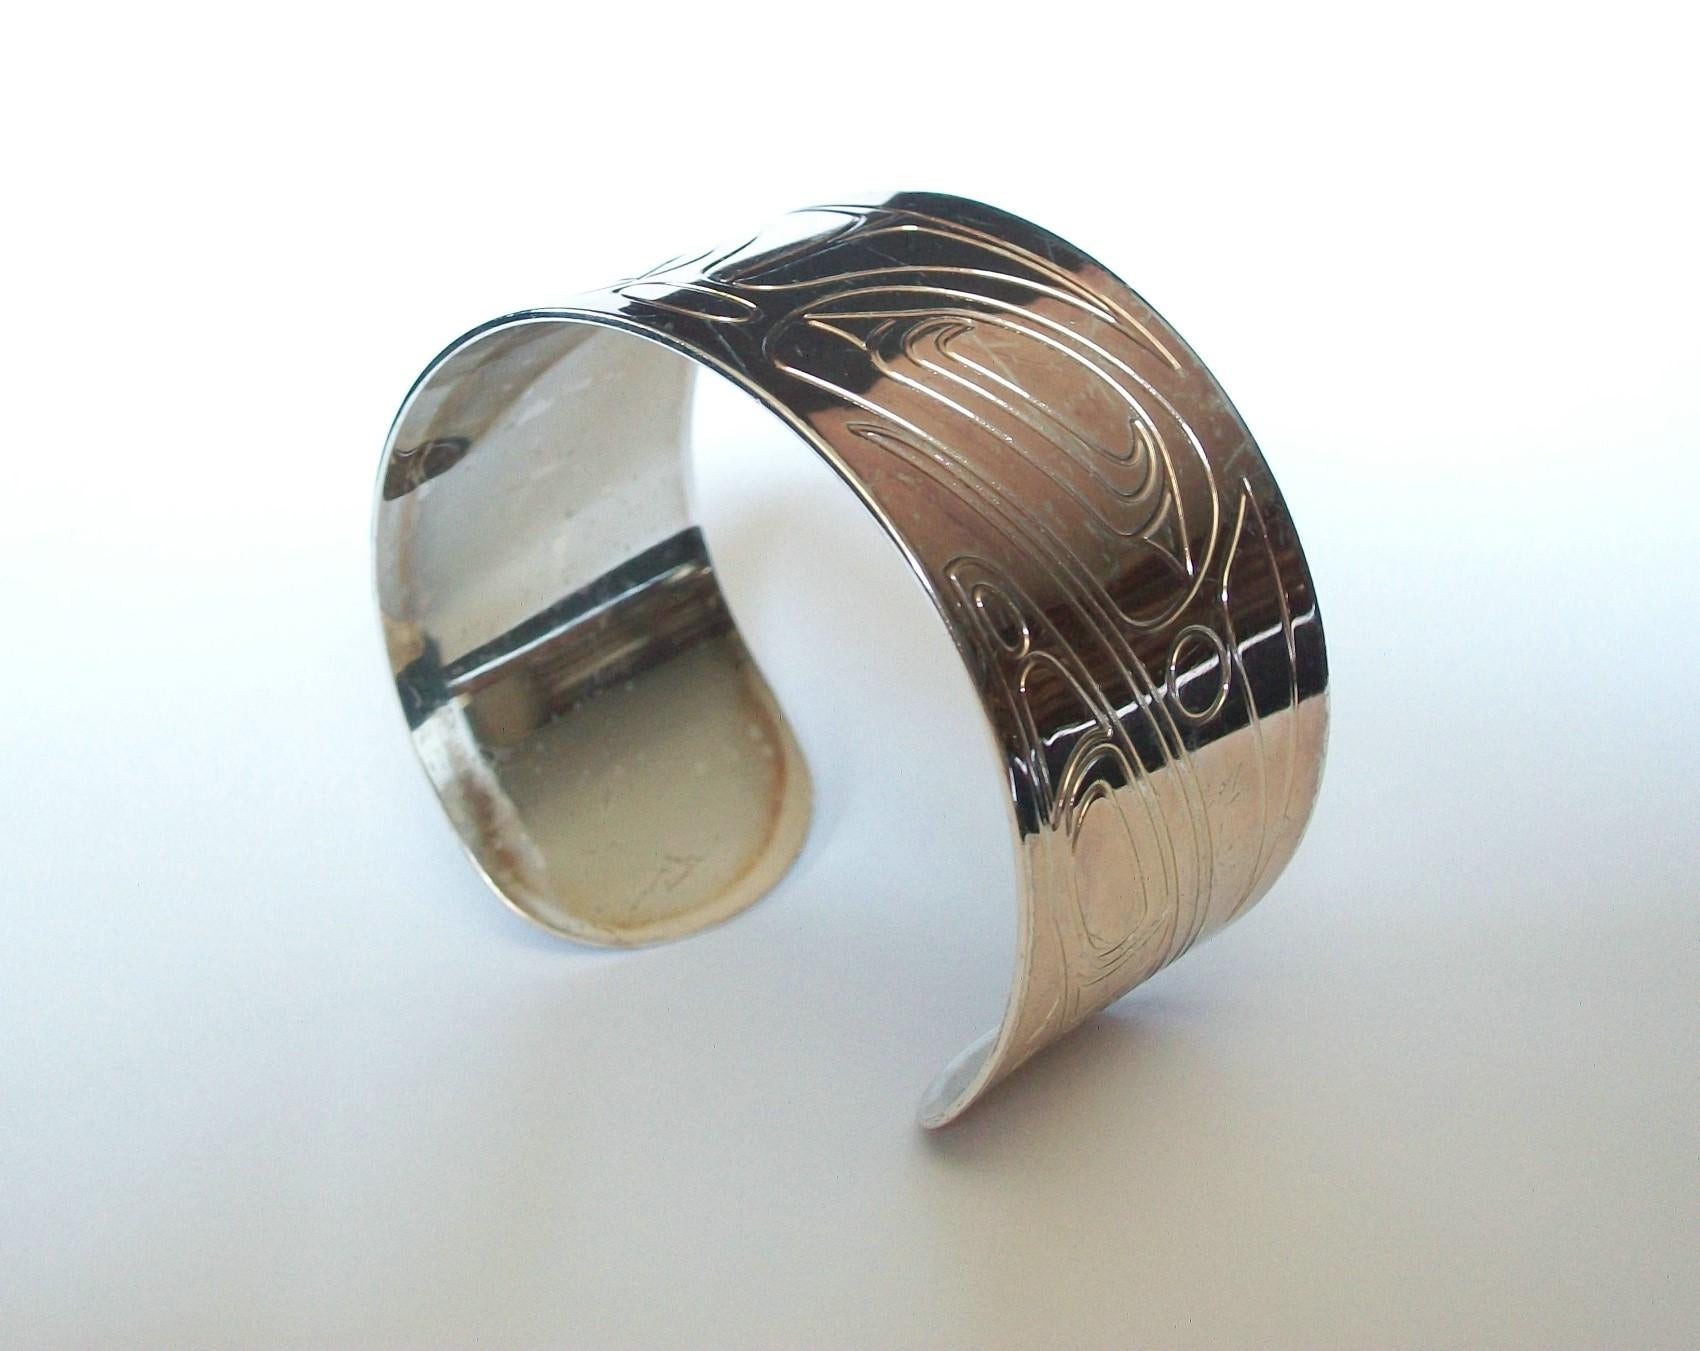 COREY W. MORAES (Designer) - Tsimshian - Canadian Aboriginal white metal cuff bracelet - motif de corbeau estampé sur toute la face du bracelet - convient à un petit poignet - signé au dos du bracelet - marque de détaillant en ligne - Canada